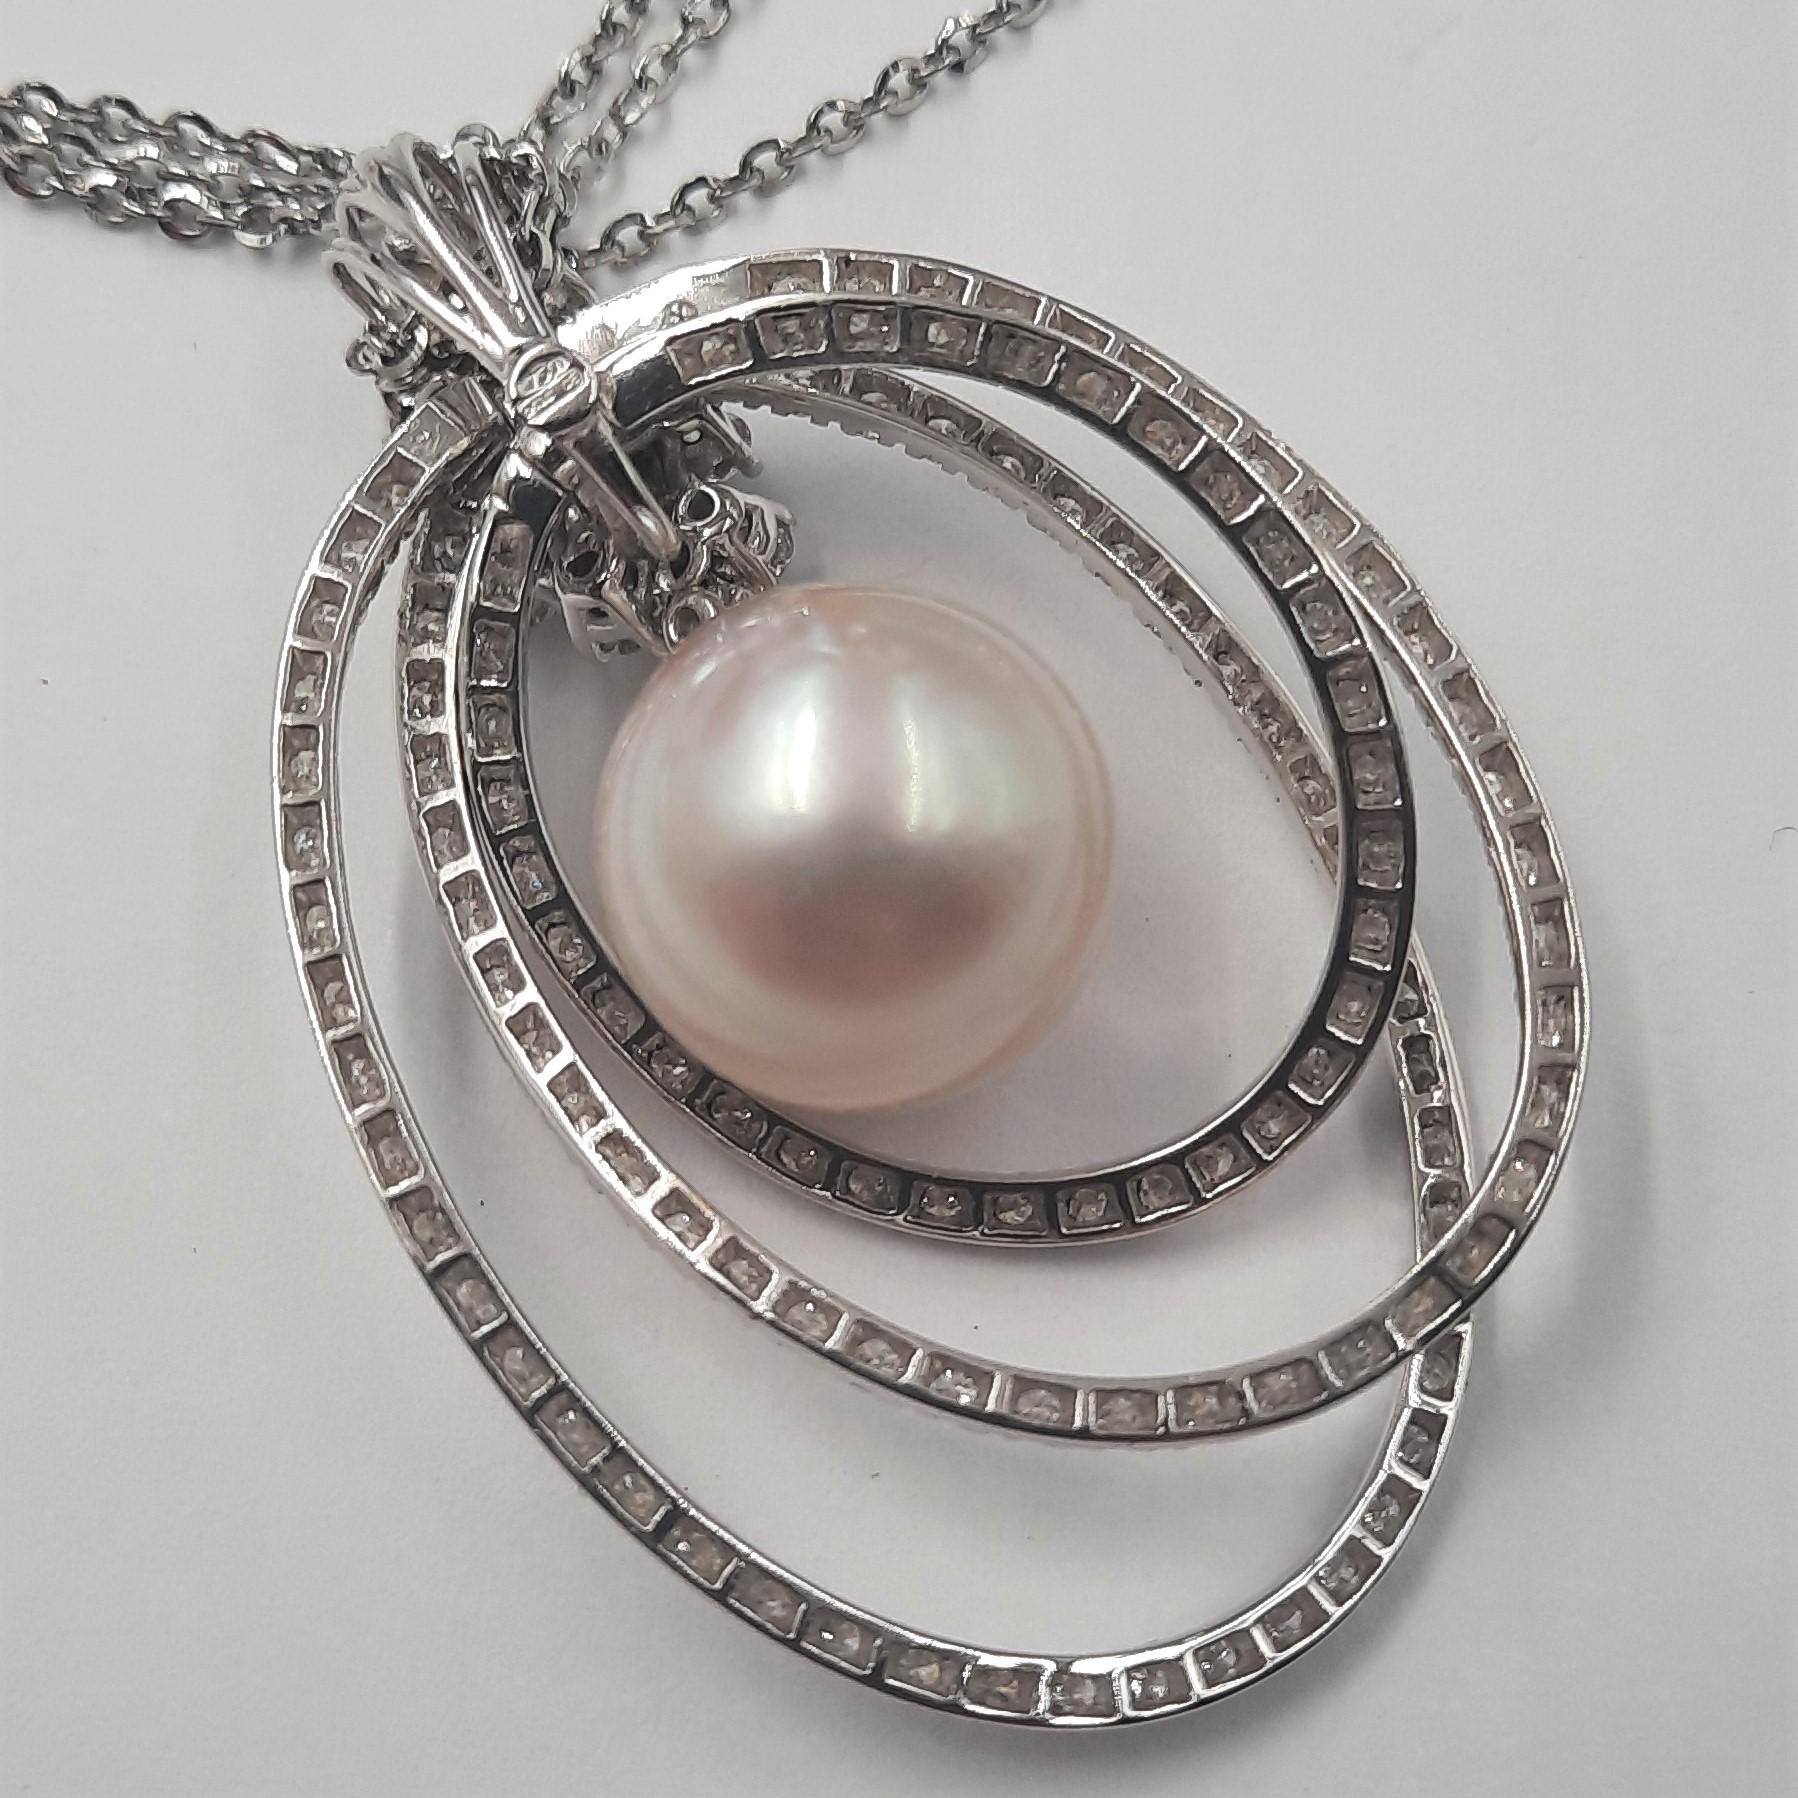 Brilliant Cut Diamond Australian Sea Pearl White Gold Pendant In New Condition For Sale In Marcianise, CE, IT